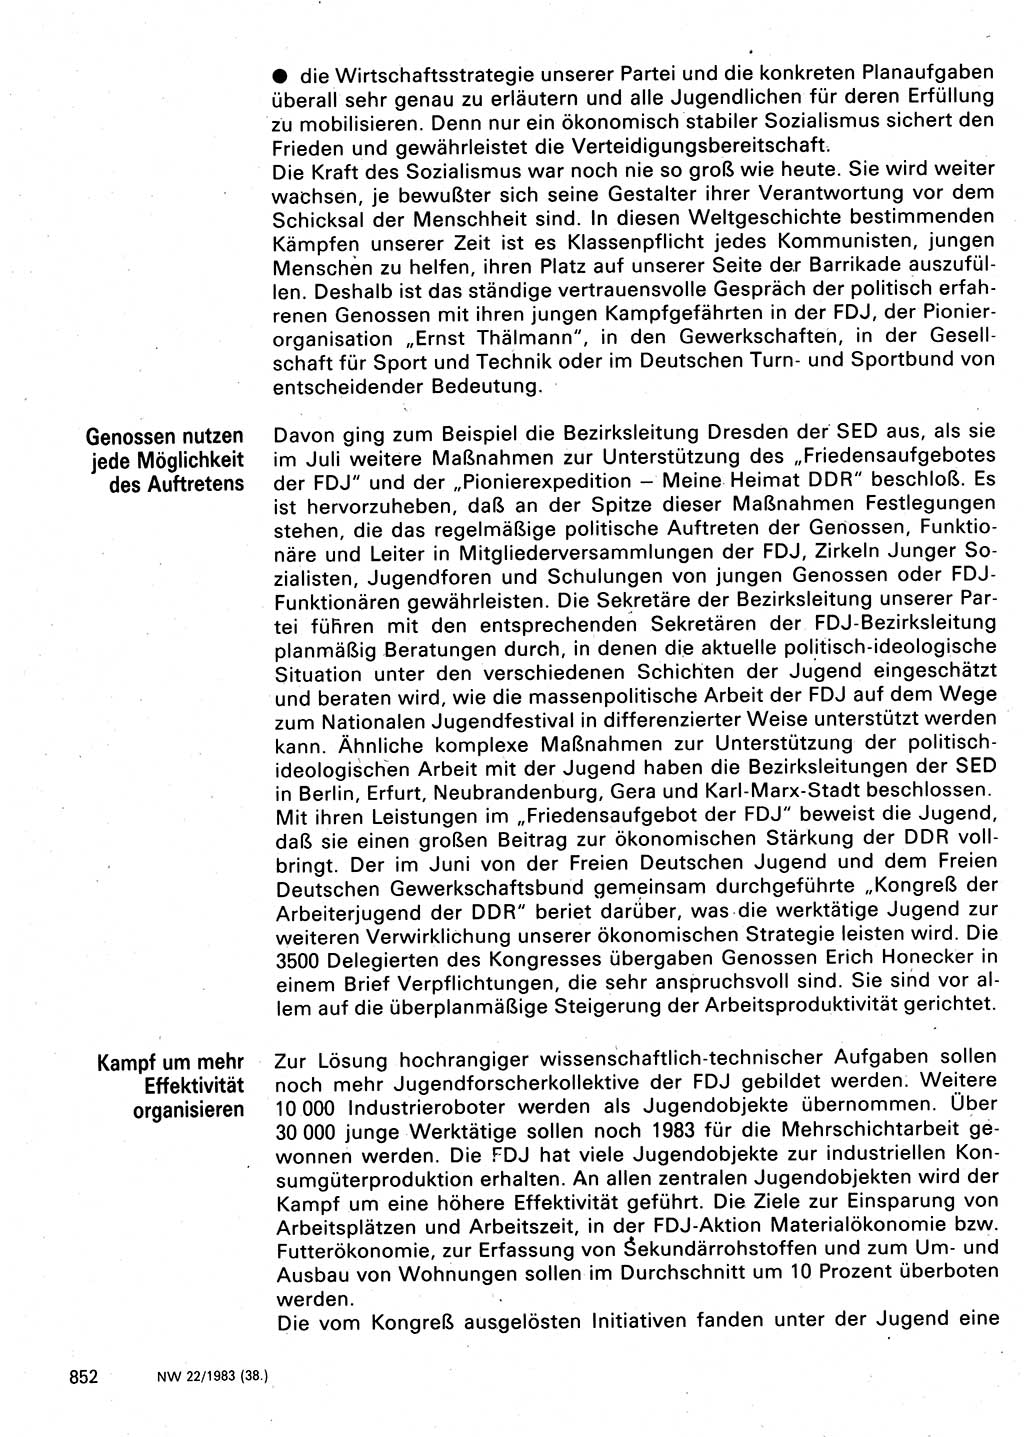 Neuer Weg (NW), Organ des Zentralkomitees (ZK) der SED (Sozialistische Einheitspartei Deutschlands) für Fragen des Parteilebens, 38. Jahrgang [Deutsche Demokratische Republik (DDR)] 1983, Seite 852 (NW ZK SED DDR 1983, S. 852)